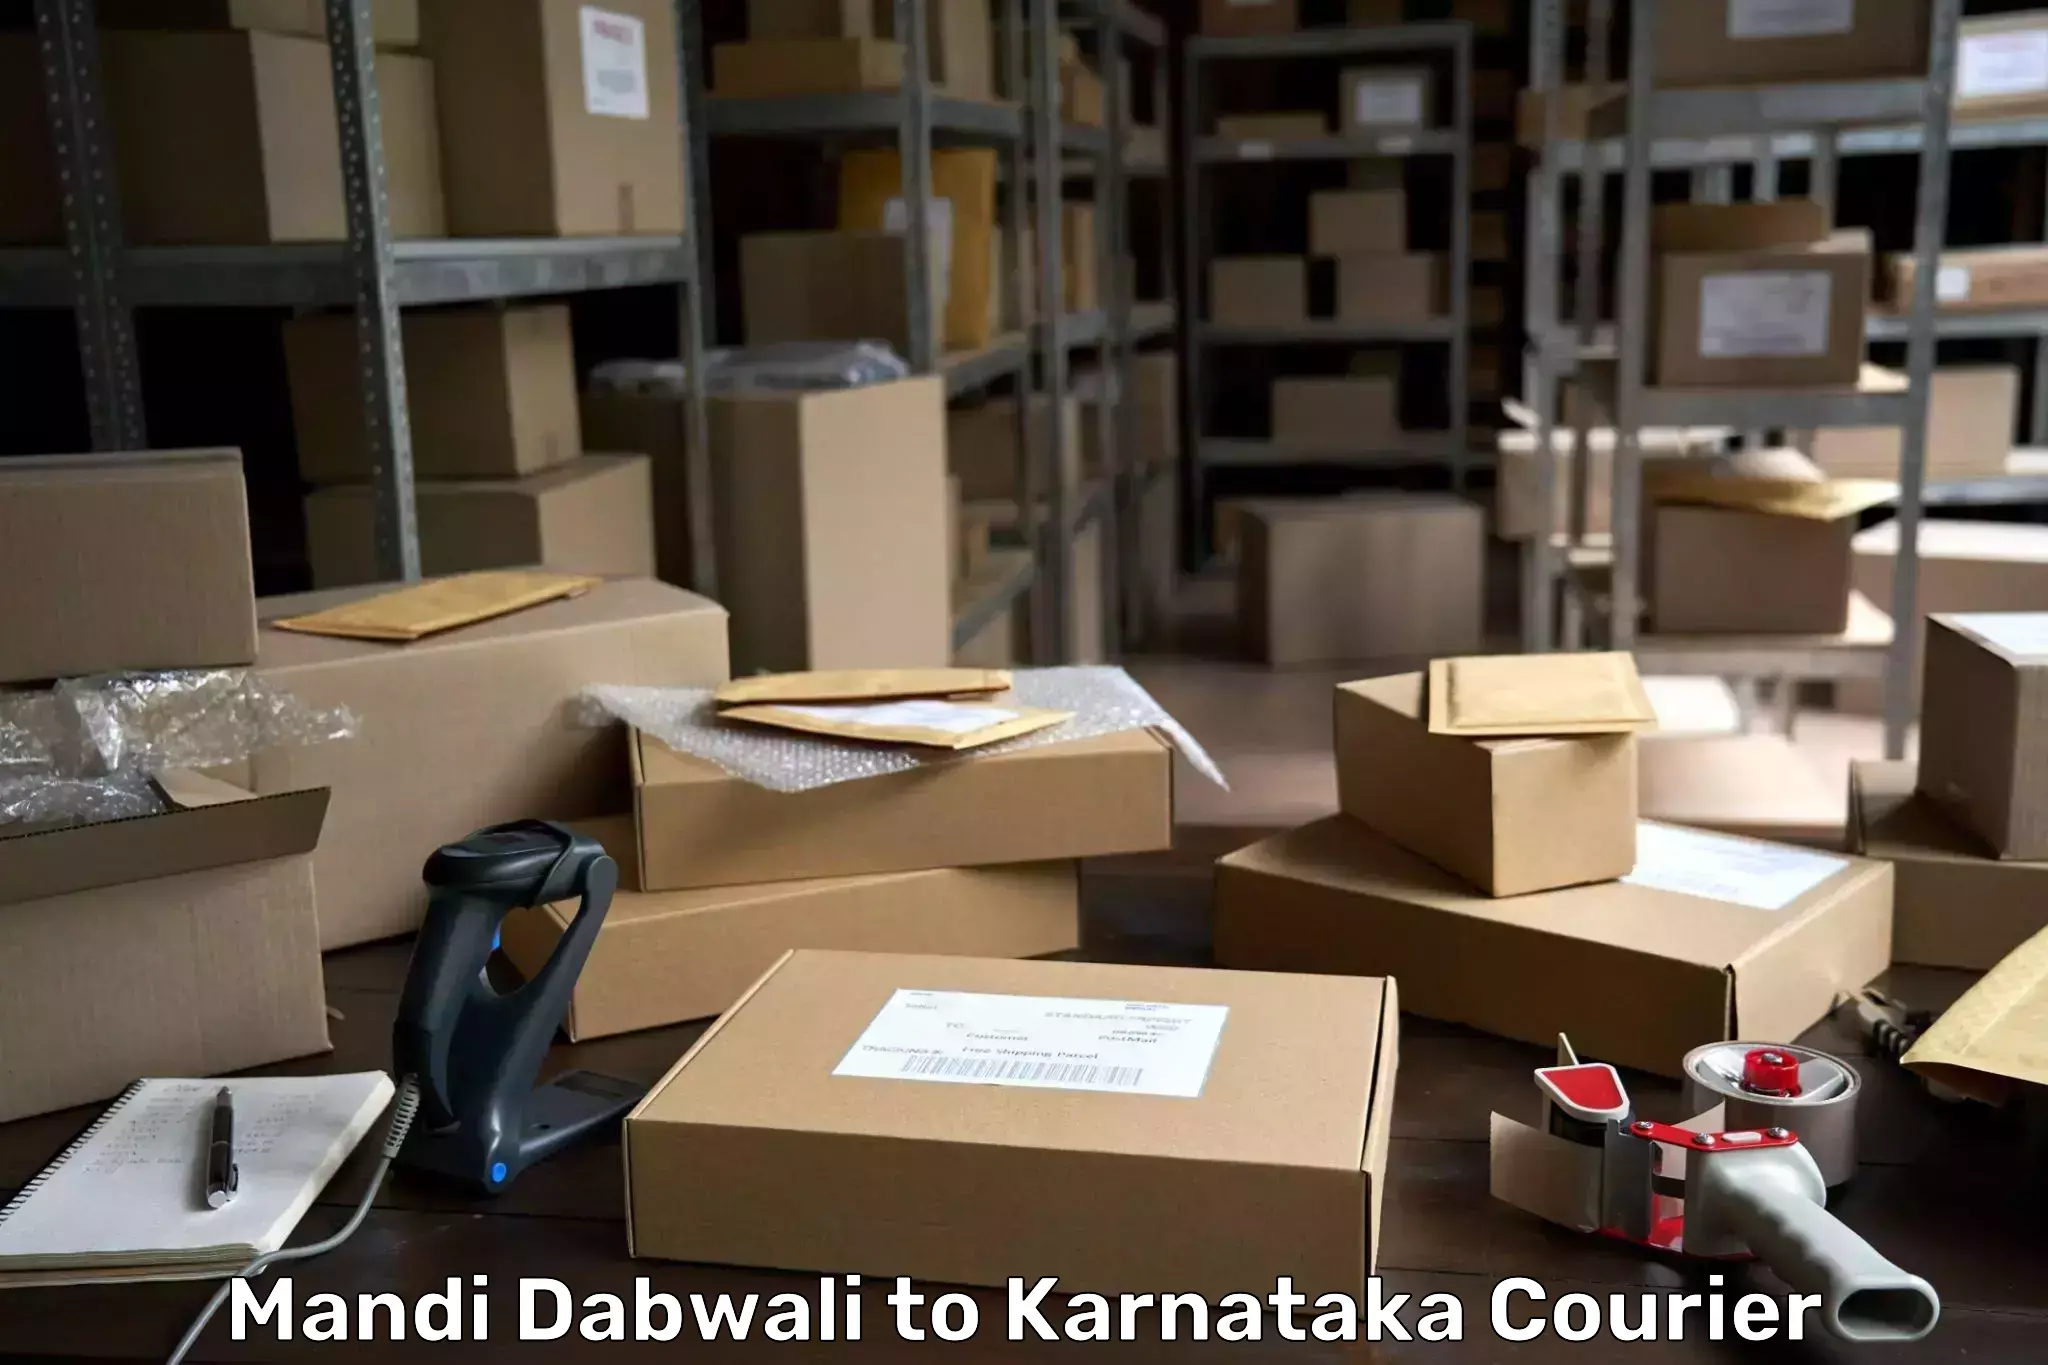 Express logistics providers Mandi Dabwali to Bangarapet